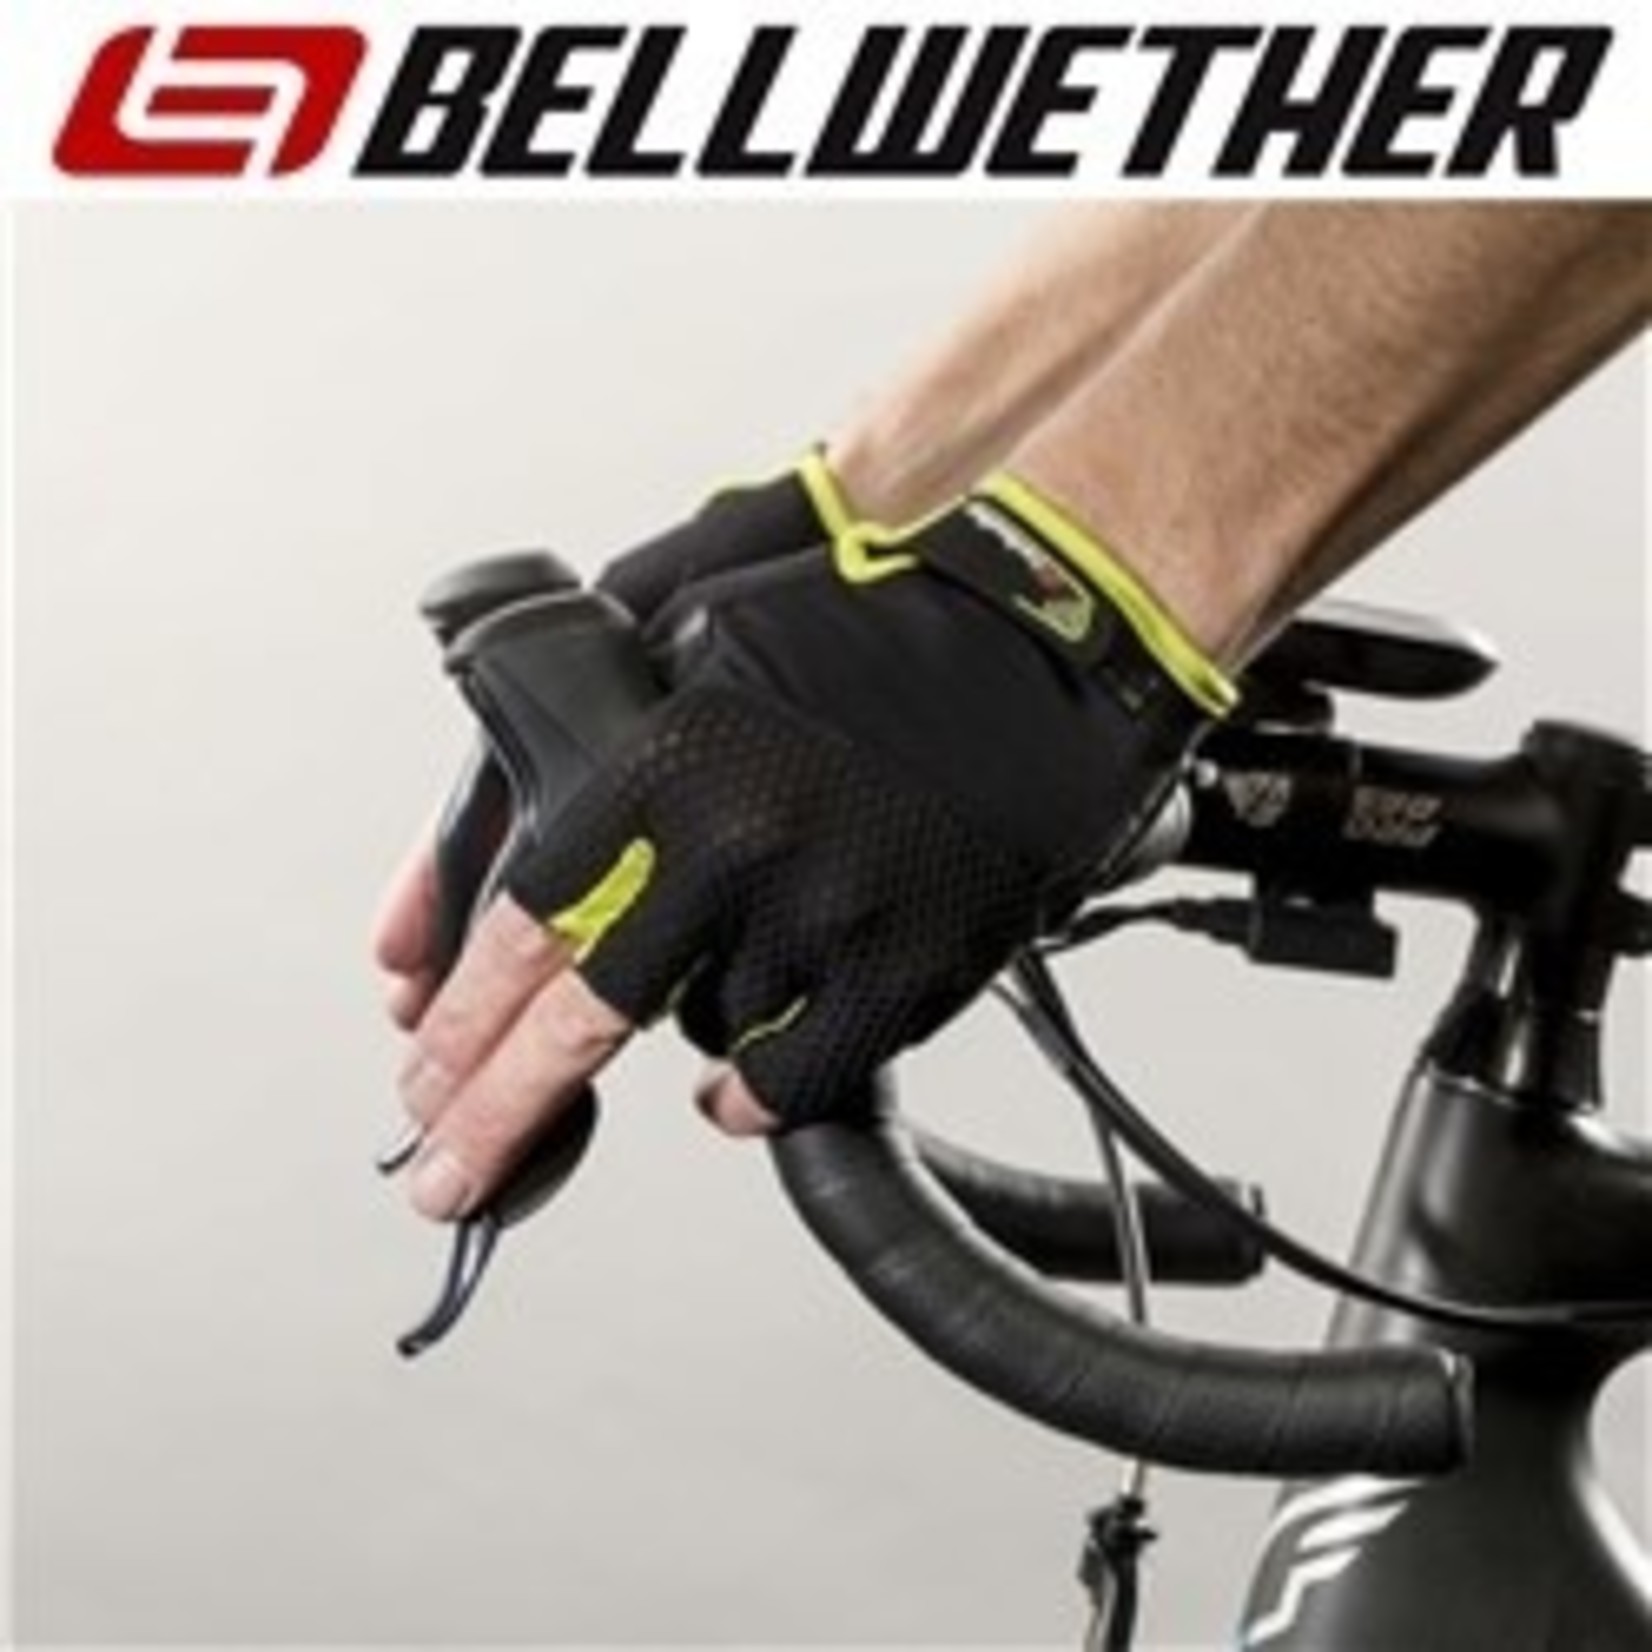 Bellwether Bellwether Cycling/Bike Gloves - Men's Gel Supreme - Hi-Vis